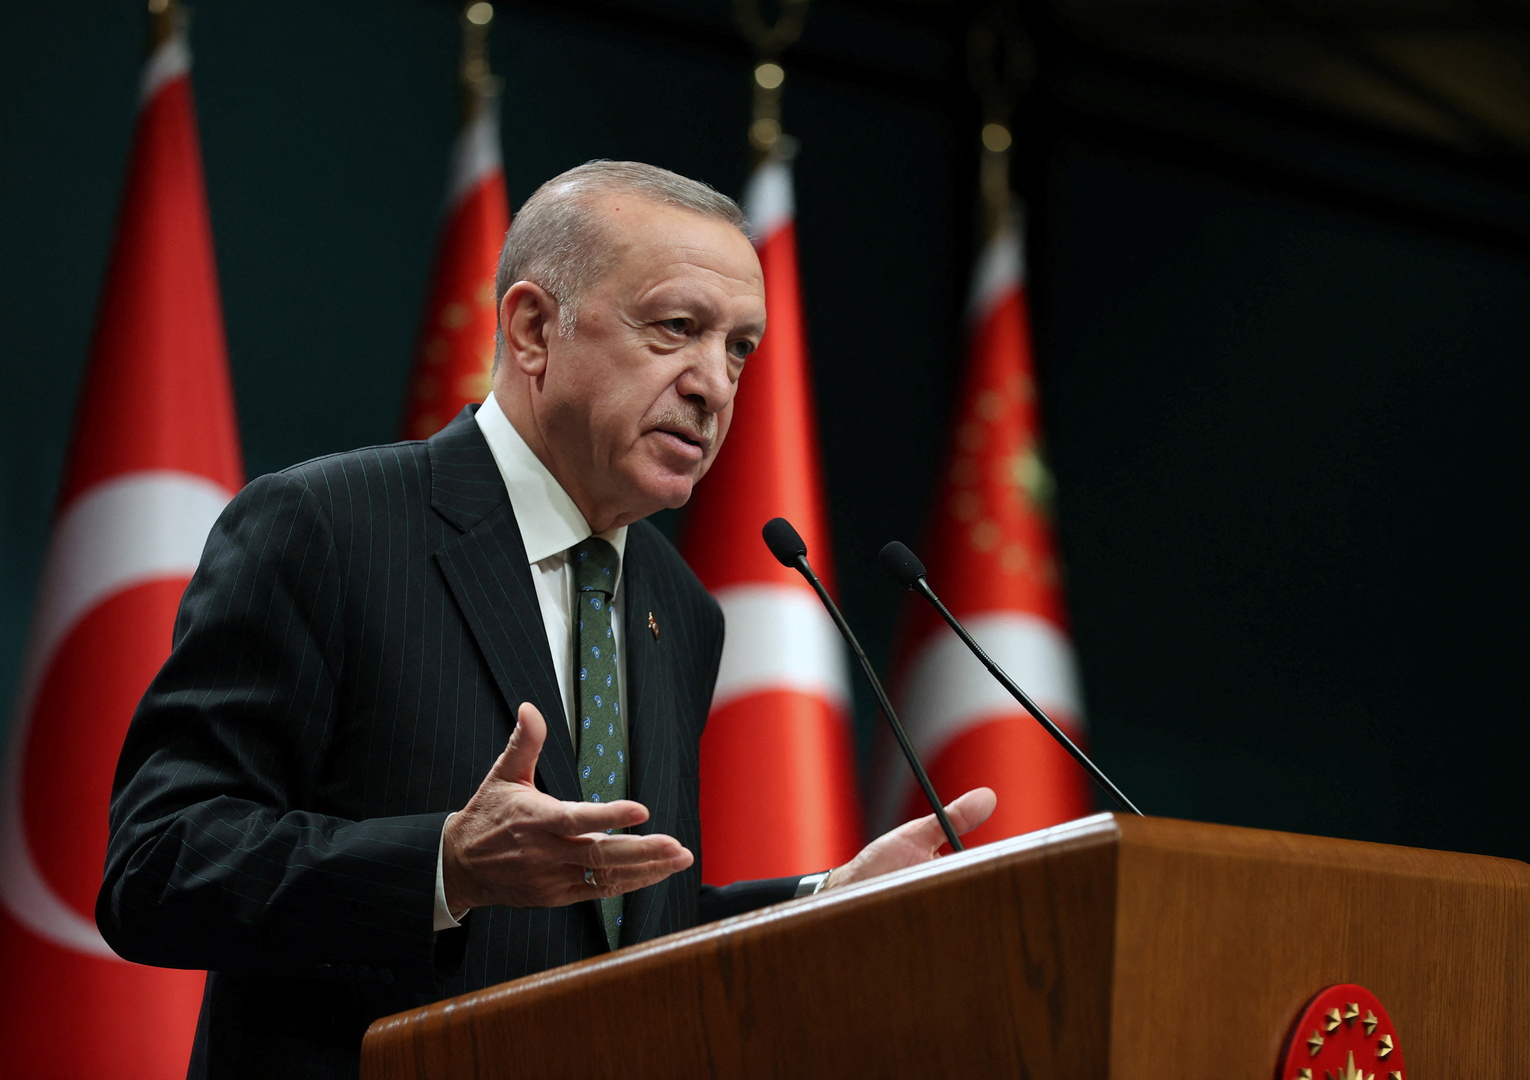 أردوغان يتحدث عن إنجاز كبير حققته خطته الاقتصادية خلال وقت قريب ويعد الأتراك بأمر